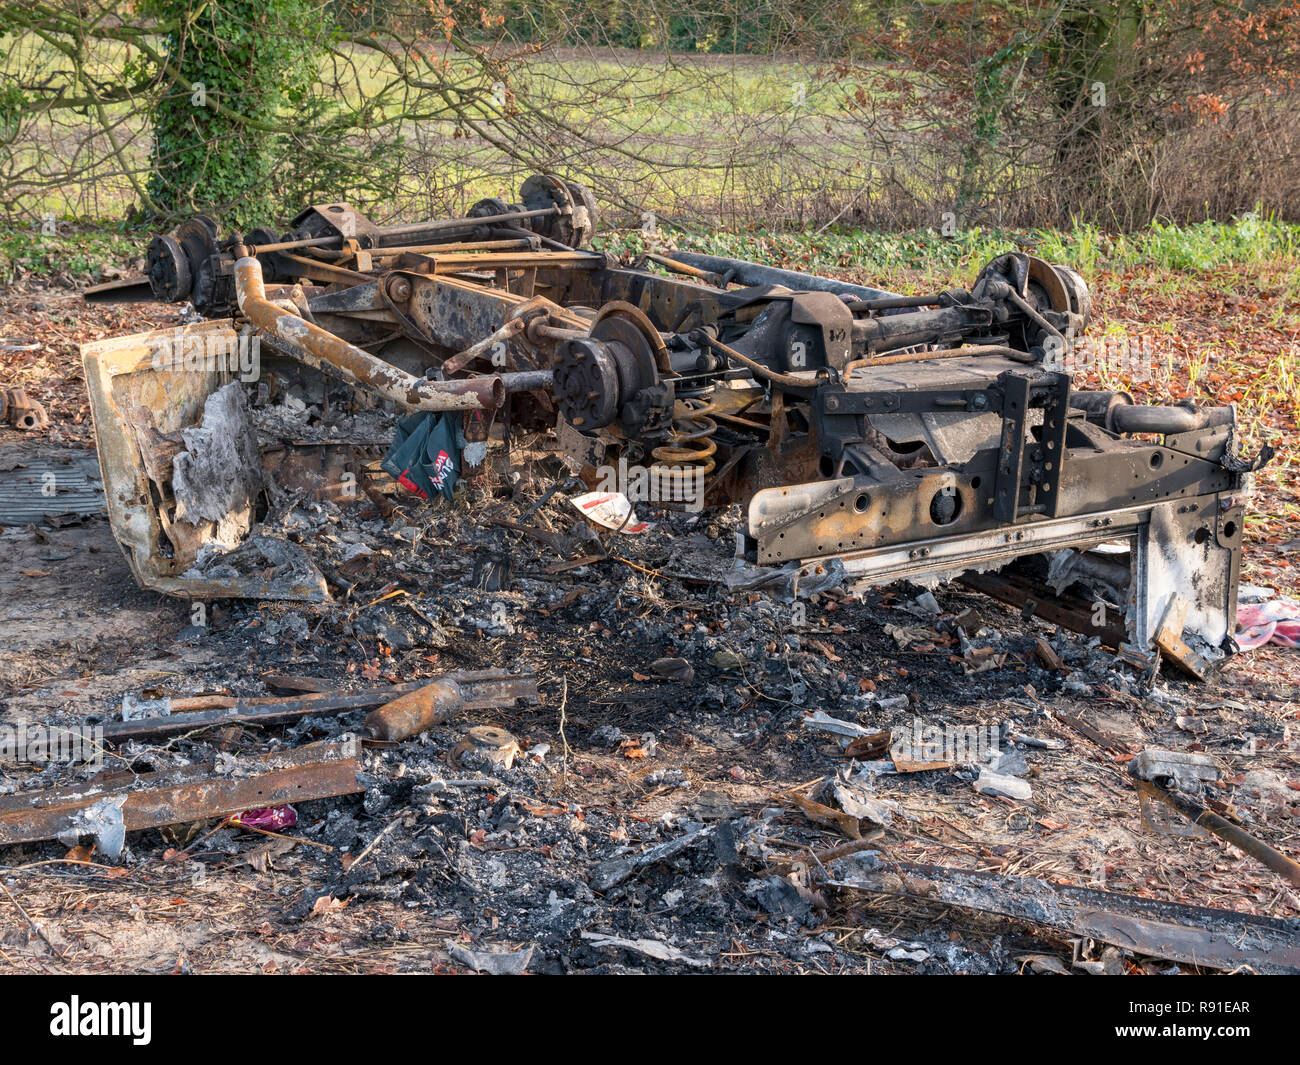 Brûlé out car situé sur le chemin des pèlerins byway, dans le Kent, Angleterre Banque D'Images